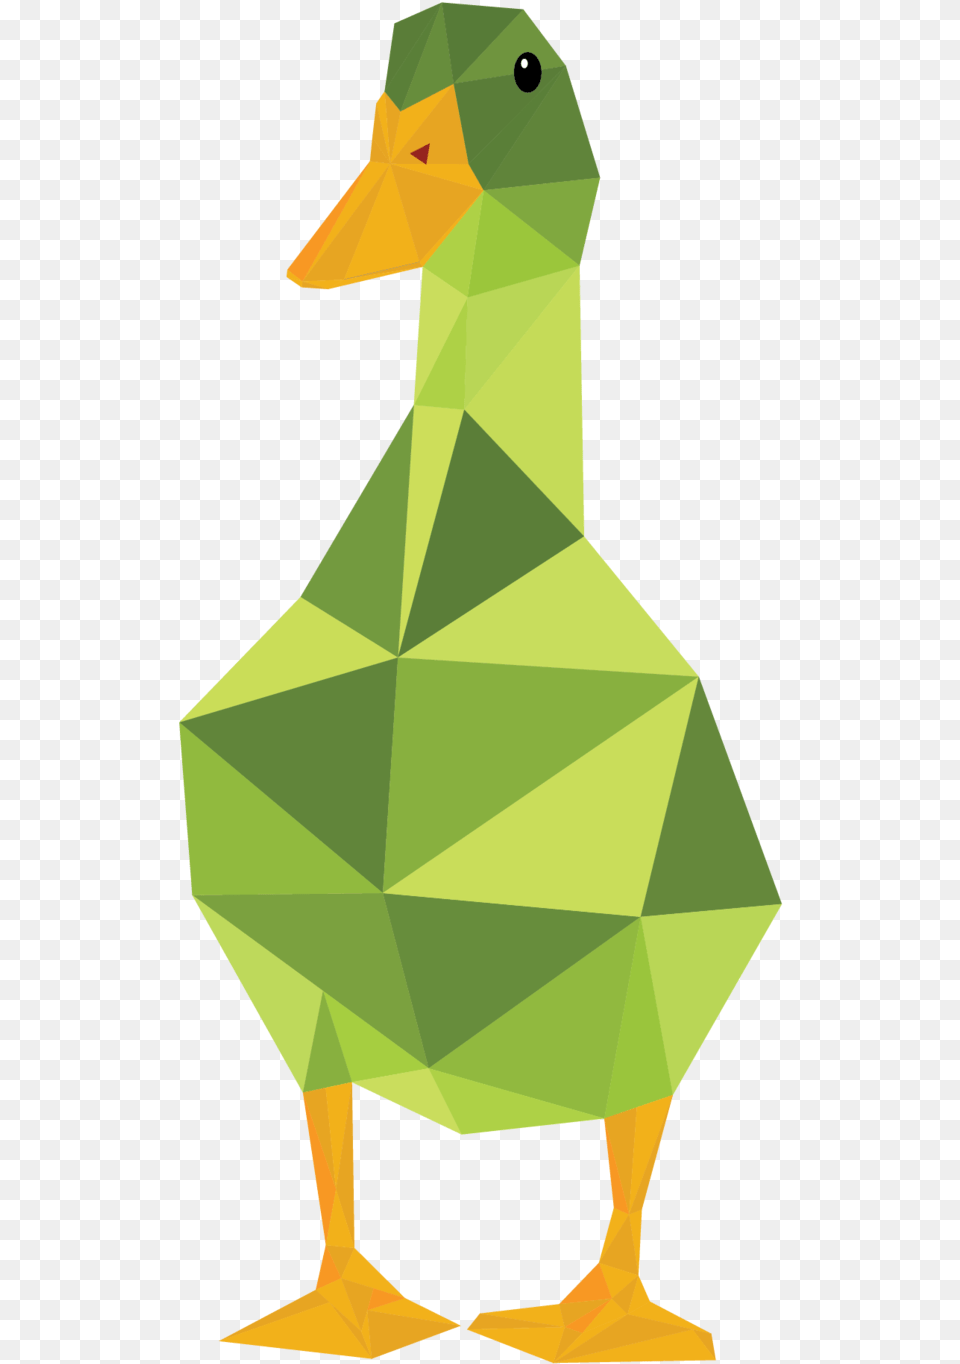 Duckduckgoose 03 Duck, Animal, Bird, Adult, Female Png